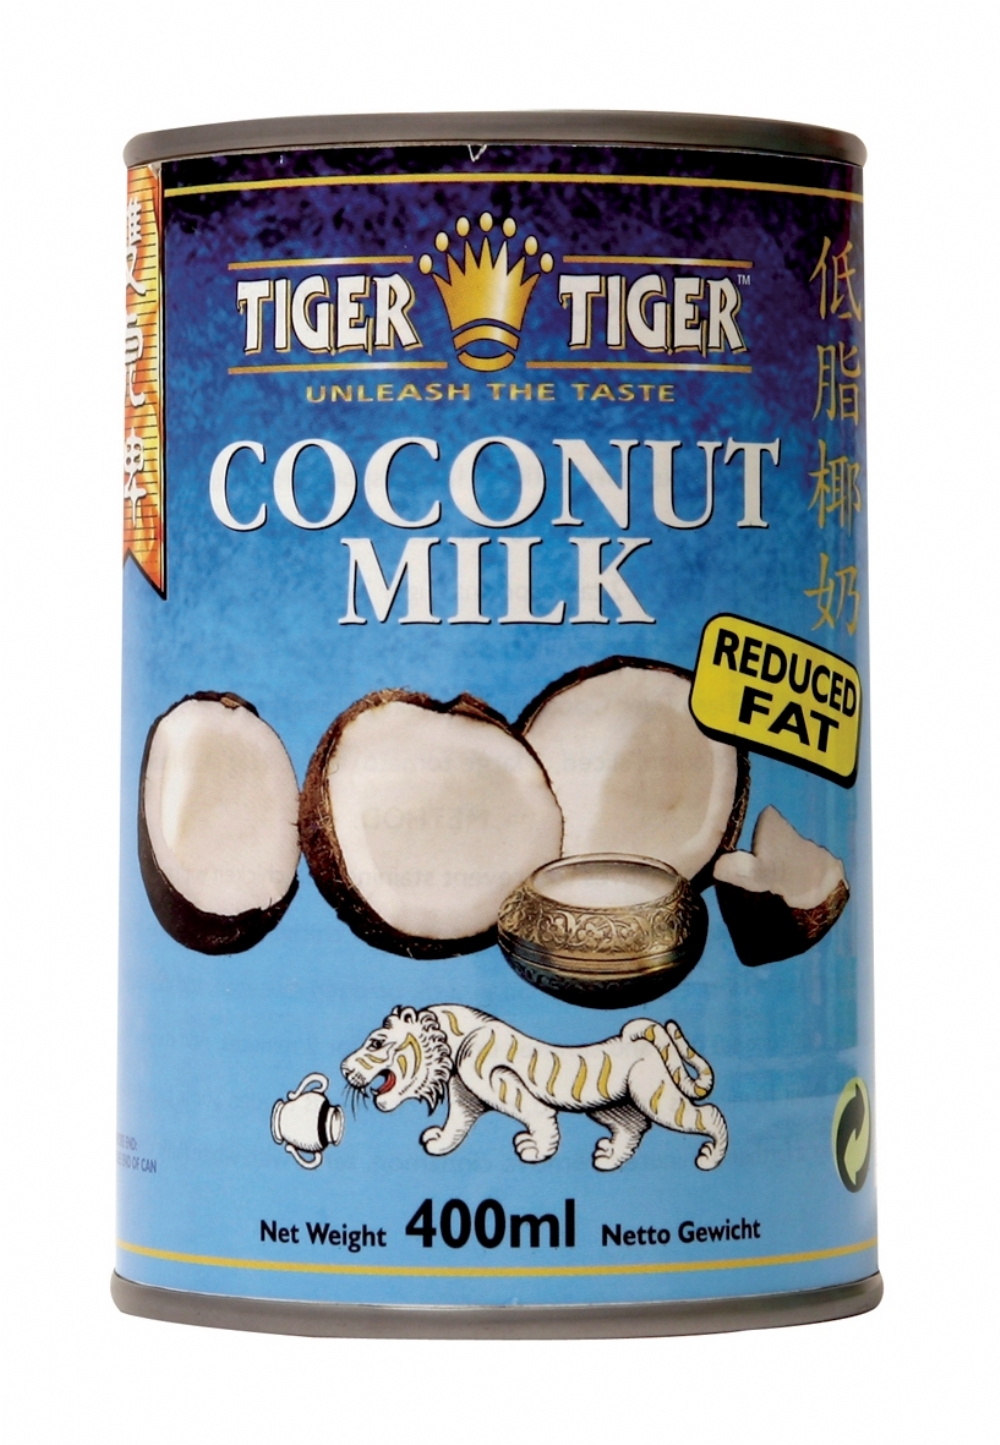 TIGER TIGER Coconut Milk - Reduced Fat 400ml